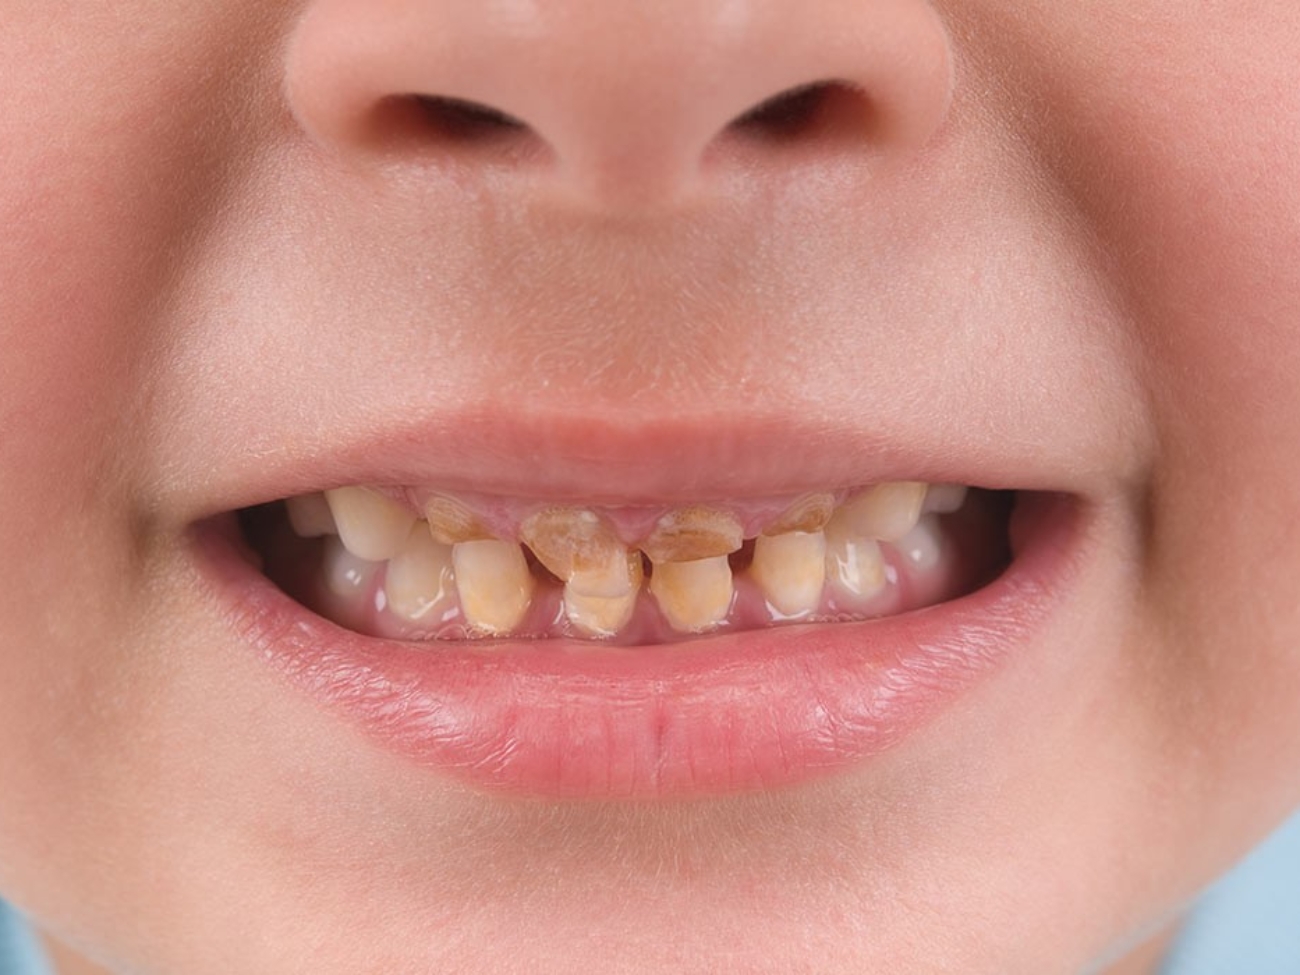 از بین بردن لکه های سیاه روی دندان کودک